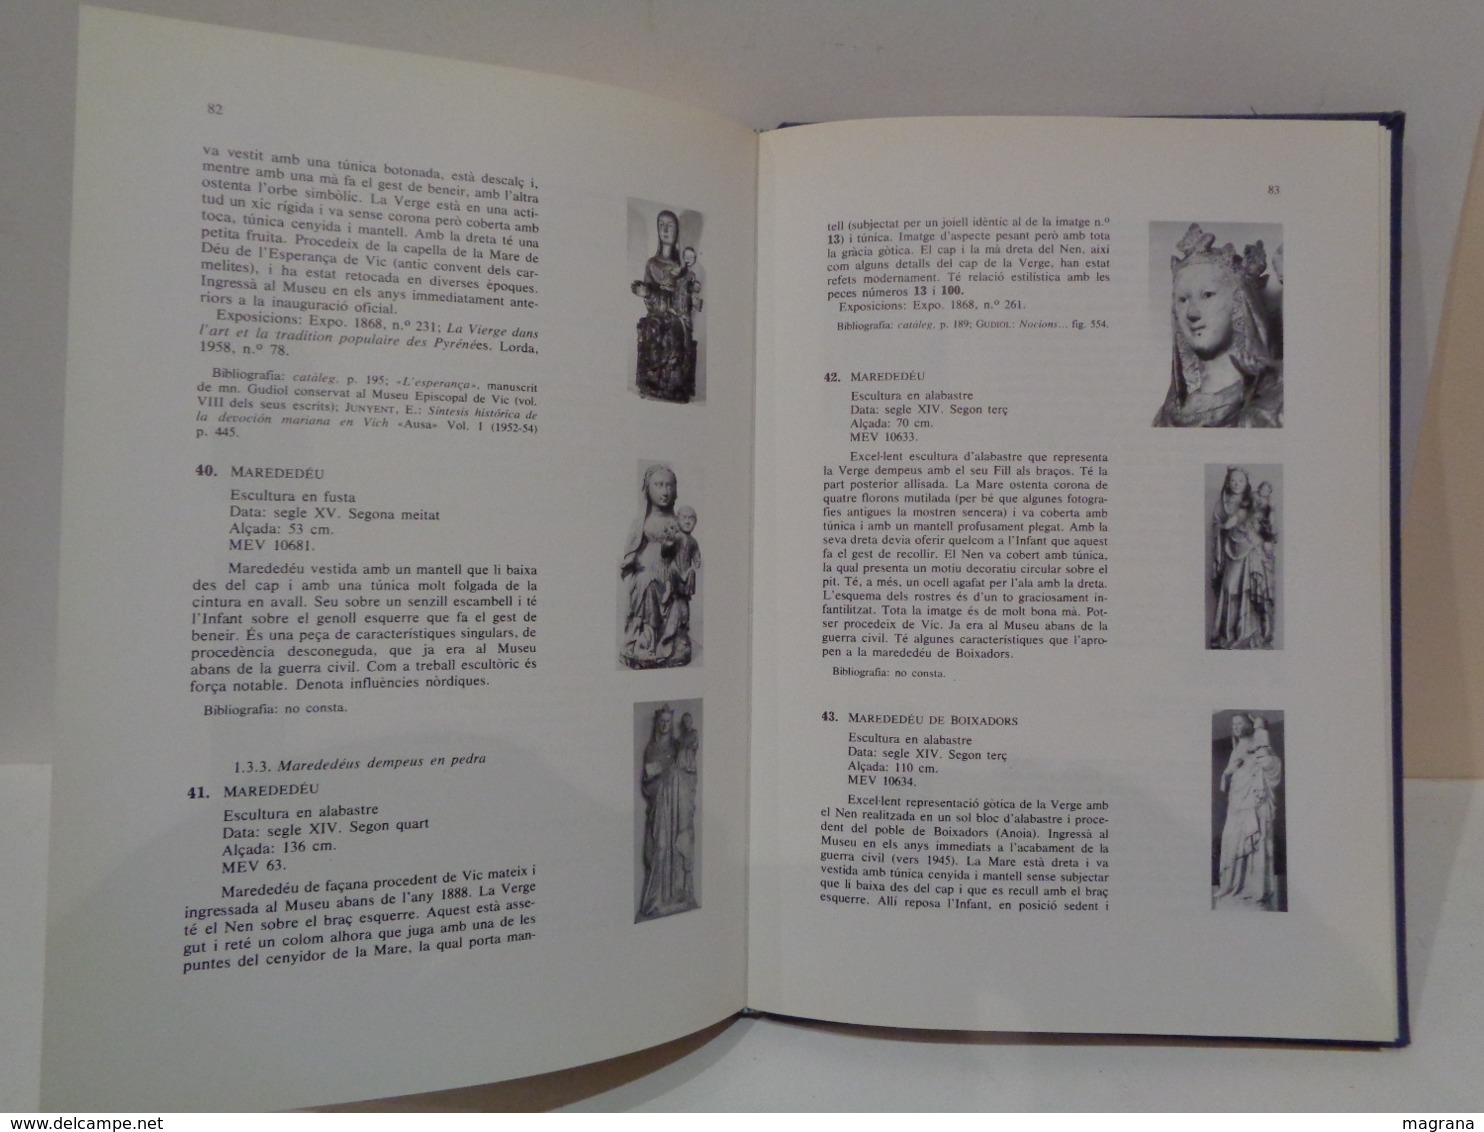 Catàleg de l'escultura gòtica del museu Episcopal de Vic. Josep Bracons Clapes. Any 1983.